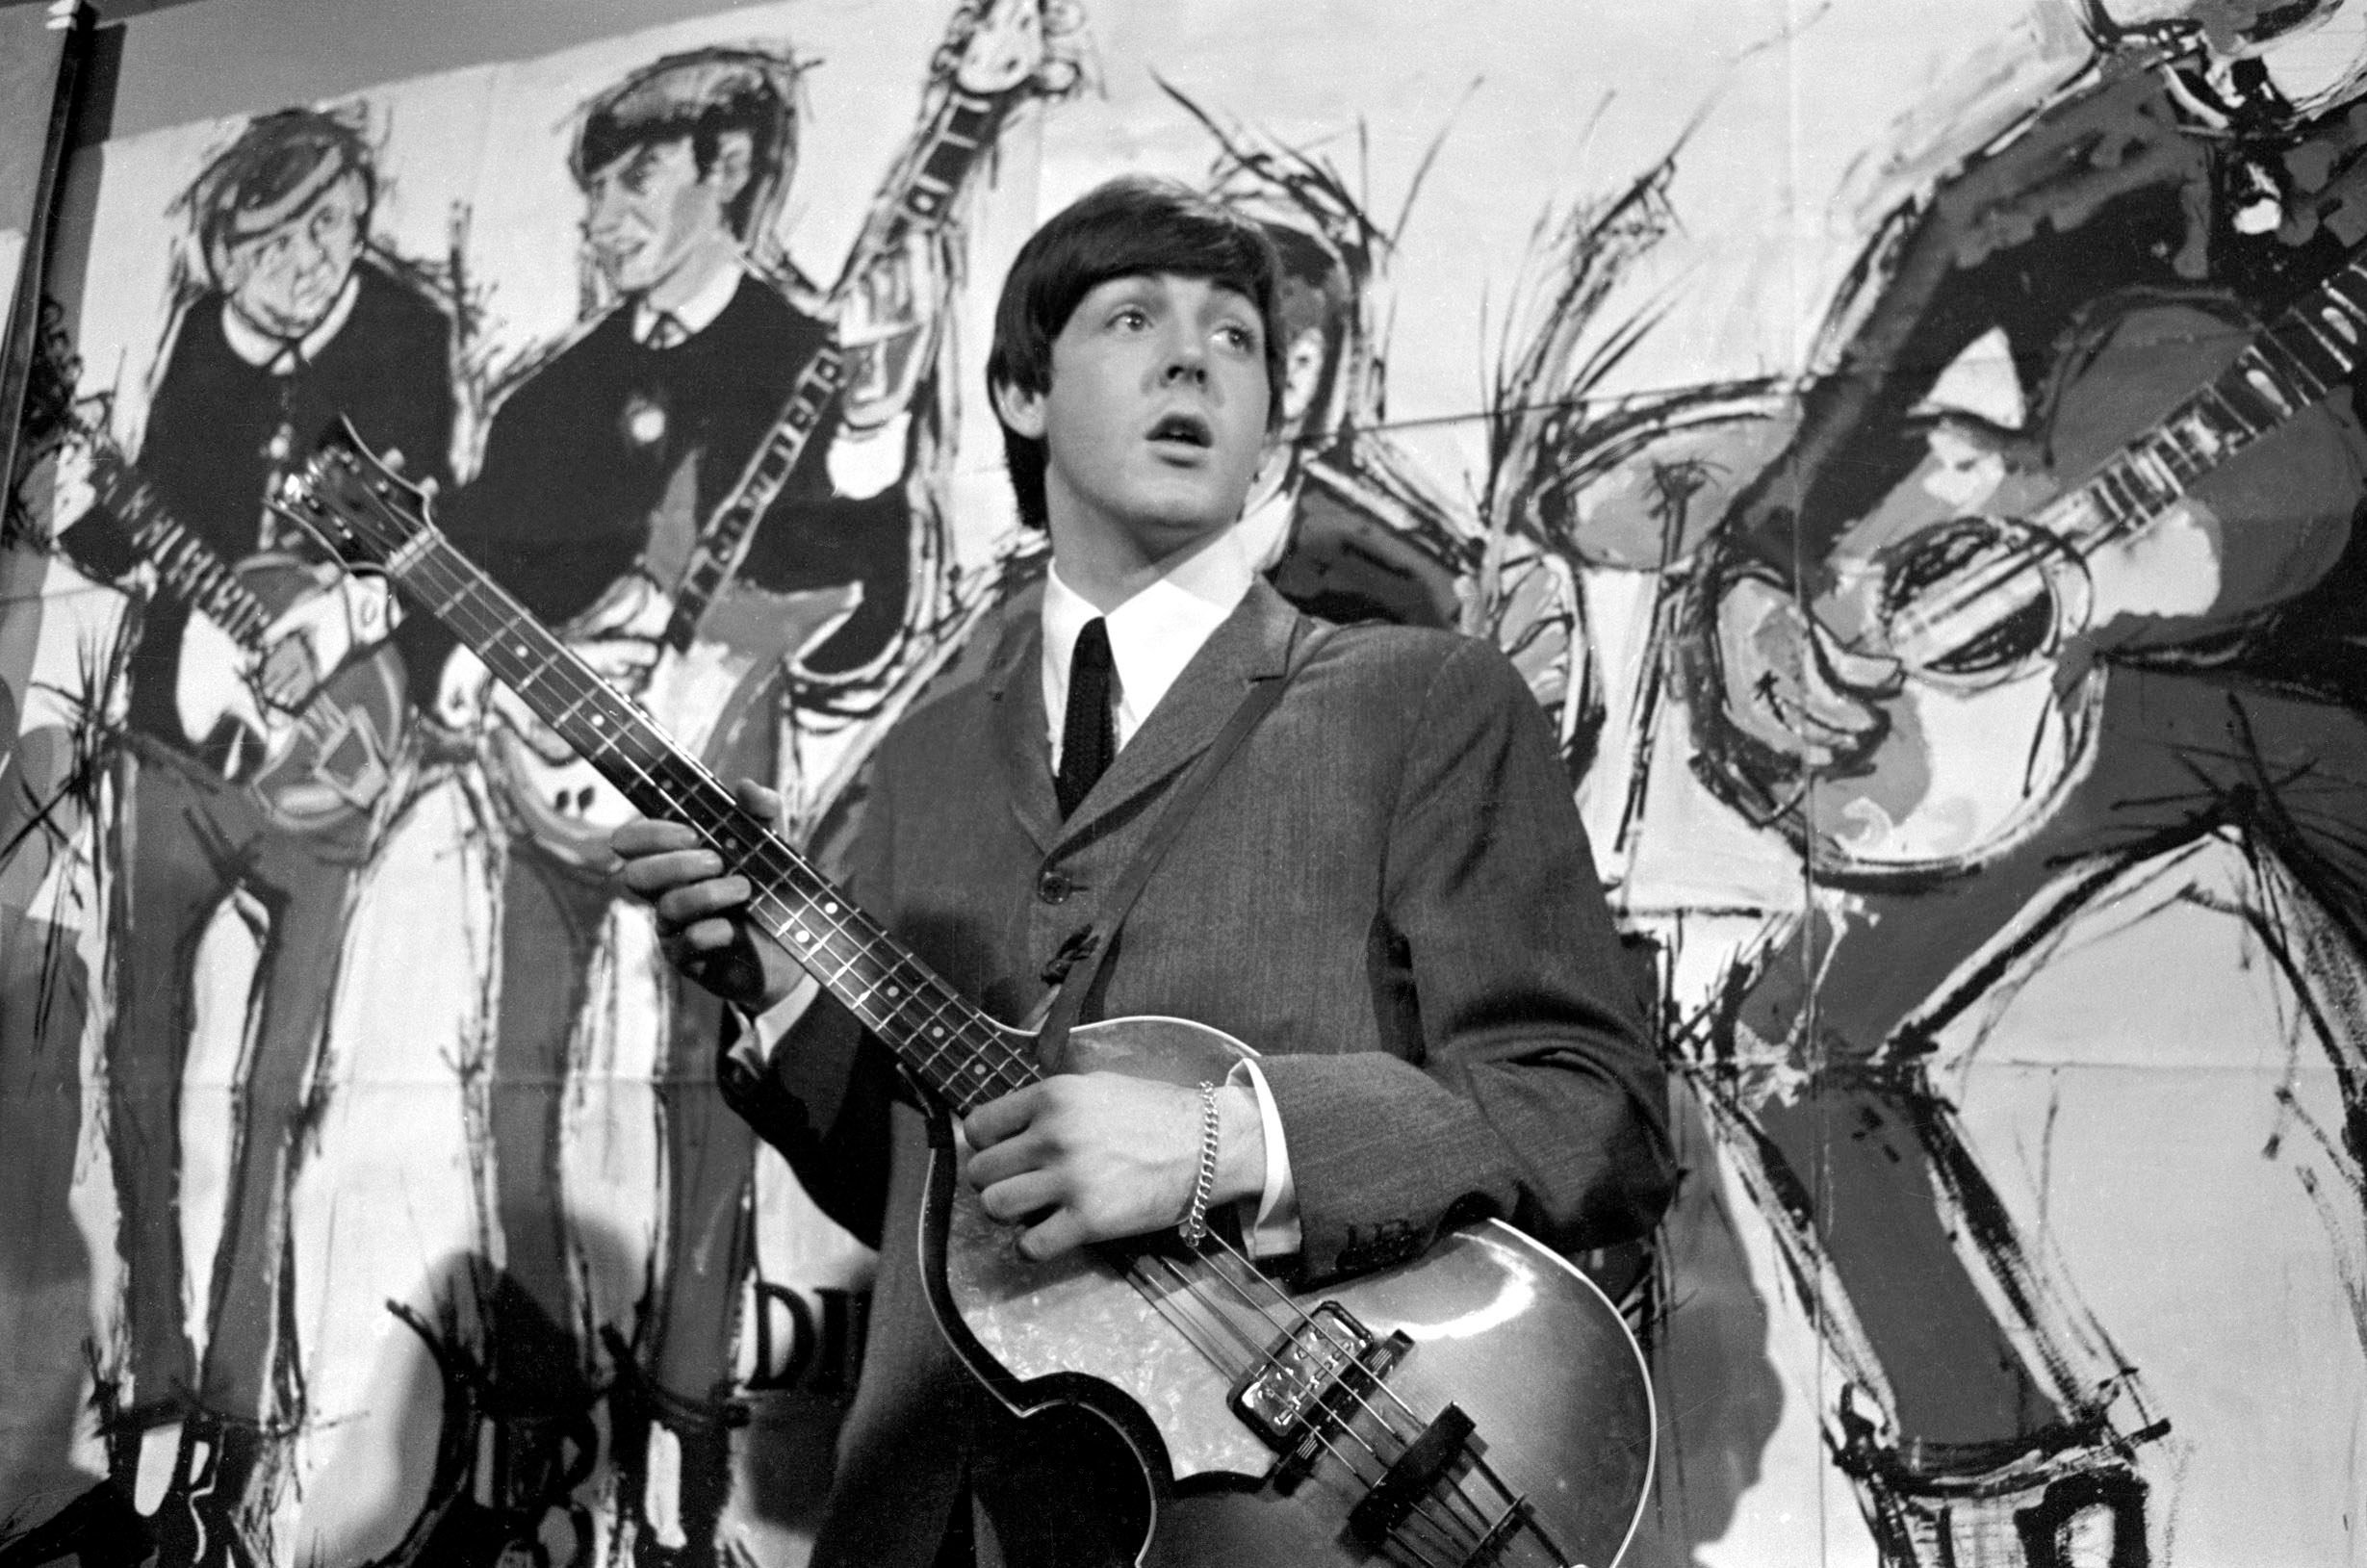 폴 매카트니는 발표되지 않은 15분짜리 비틀즈 노래를 이끌었다